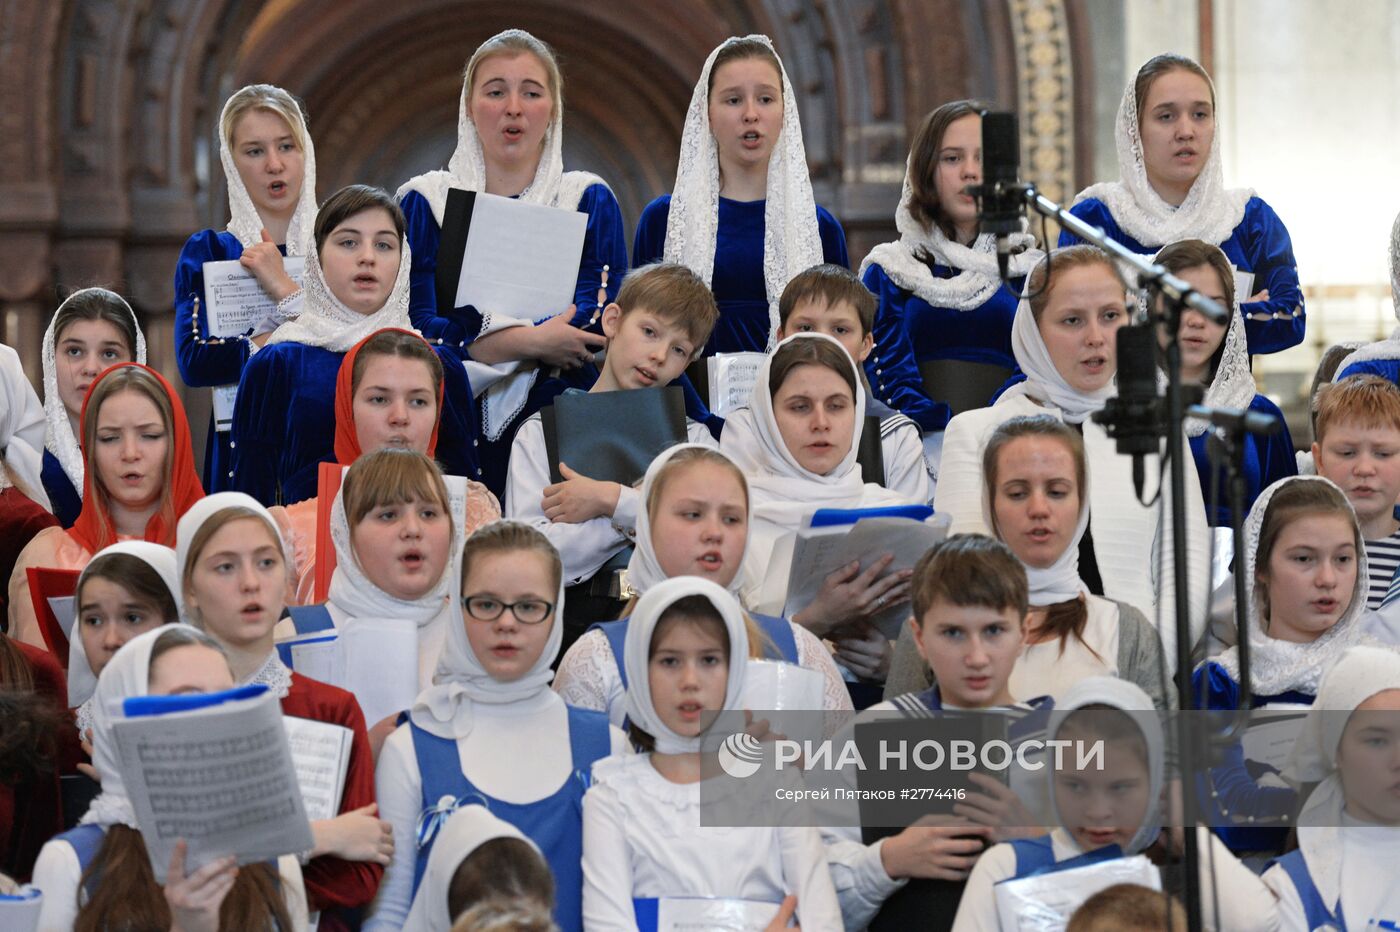 Выступление объединенного детского хора храмов Москвы и Московской области во время божественной литургии в храме Христа Спасителя